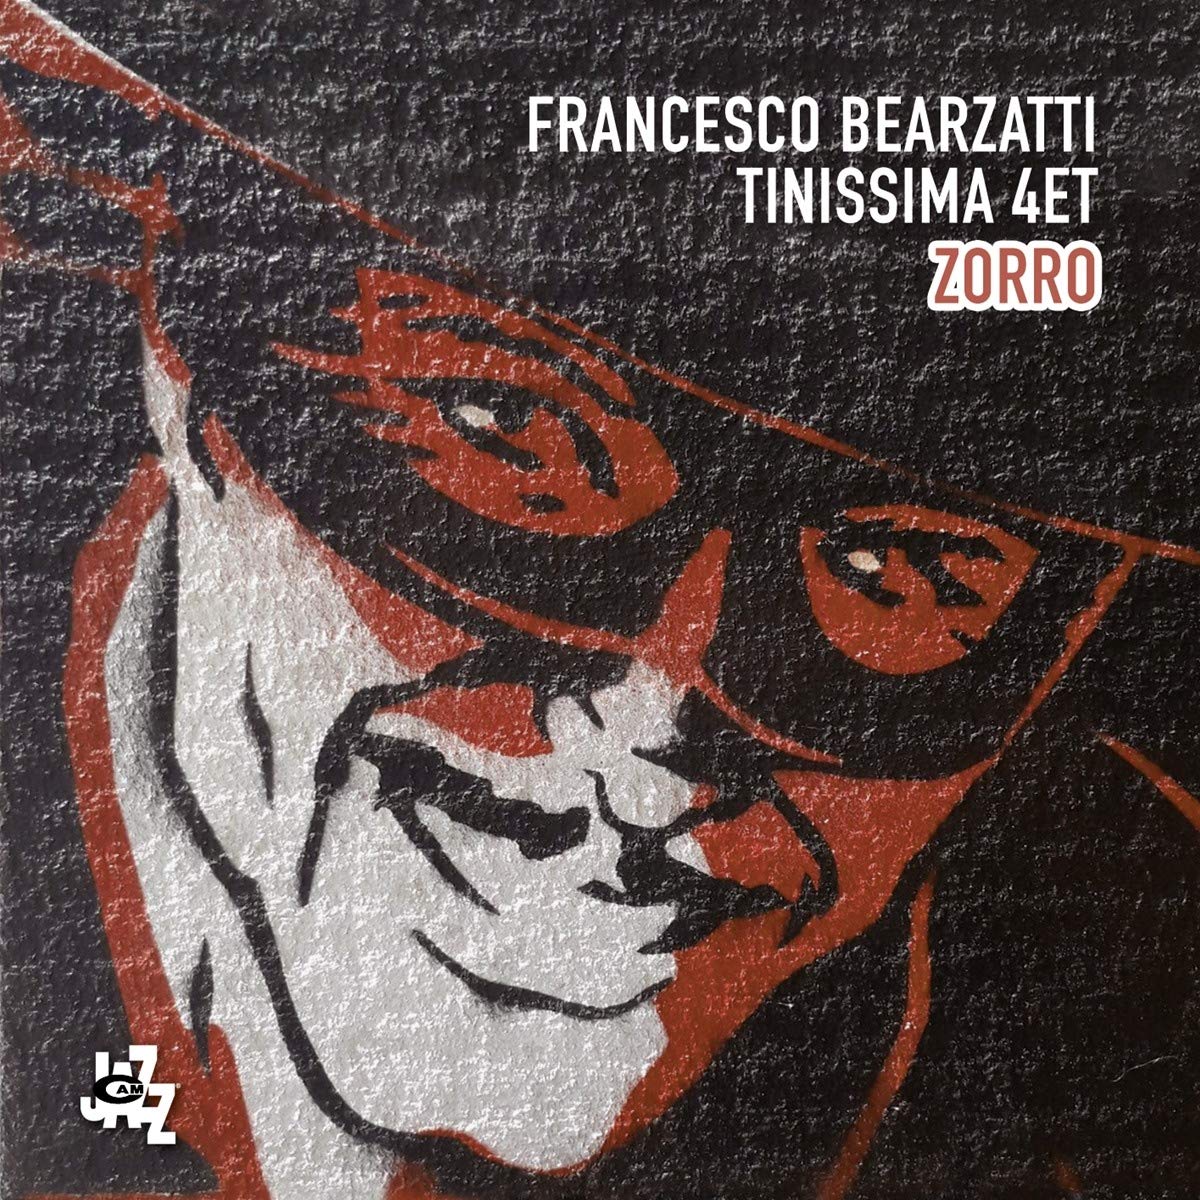 FRANCESCO BEARZATTI - Zorro cover 